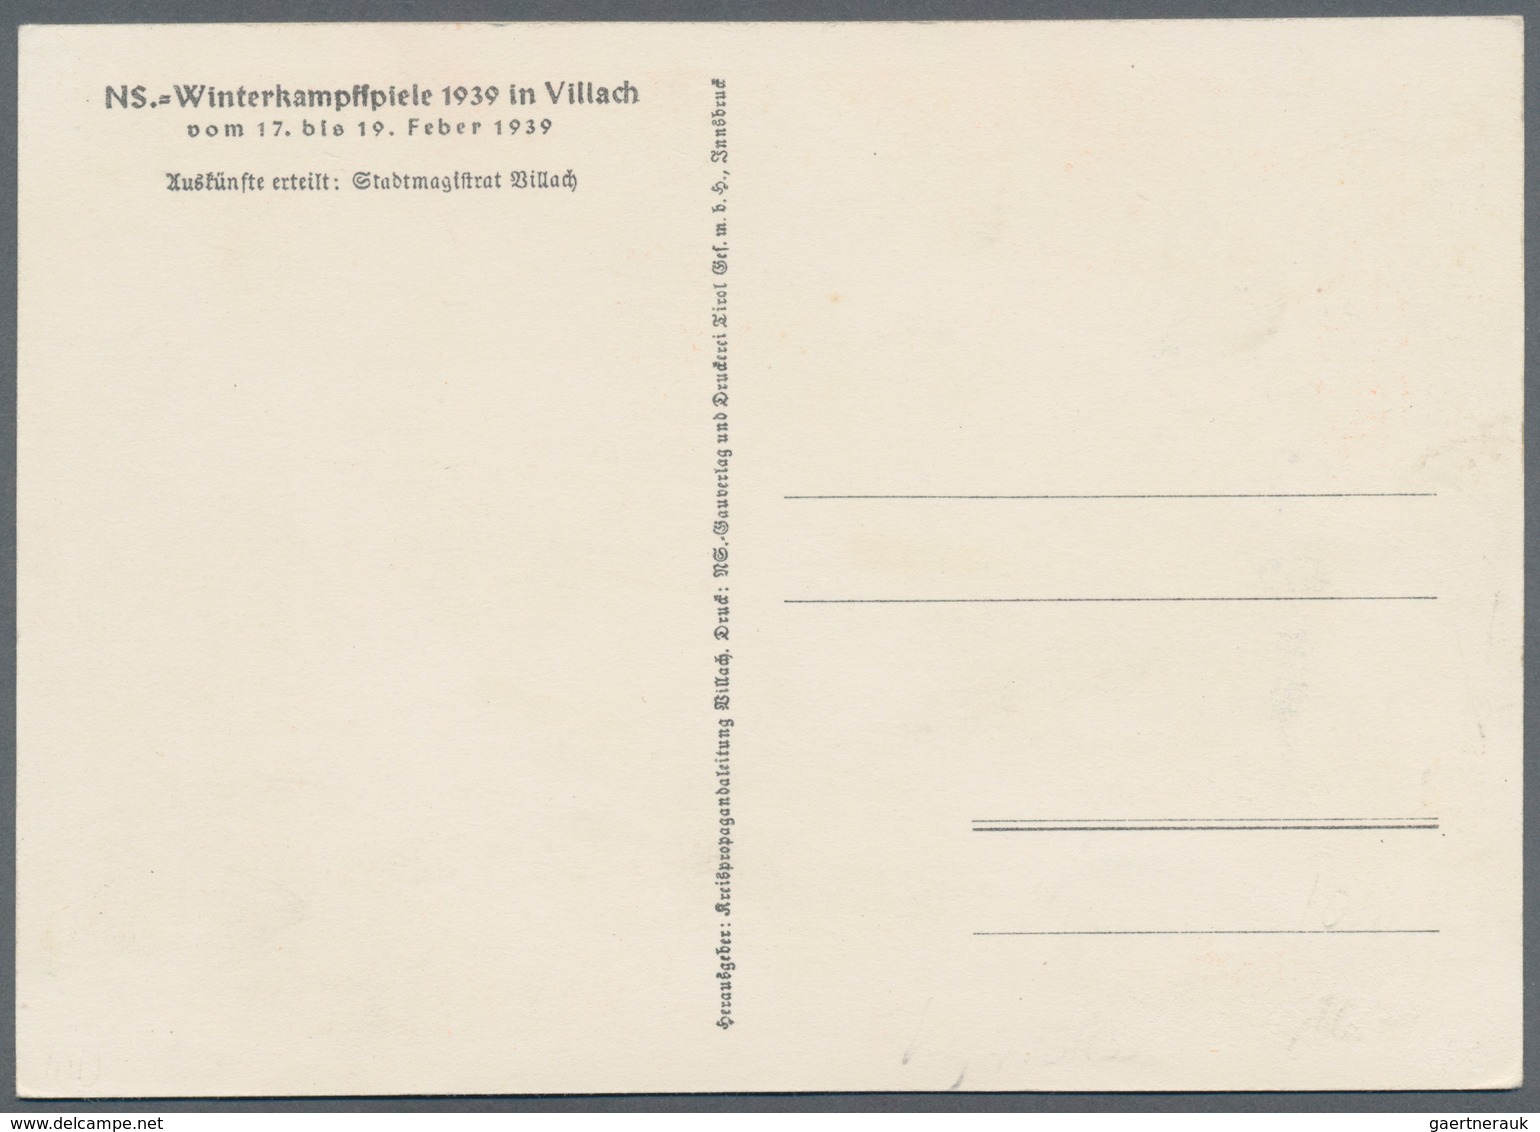 Ansichtskarten: Propaganda: 1939. N.S. Winterkampfspiele 17.-19. Feb 1939, Villach, Kärnten. Selten - Parteien & Wahlen